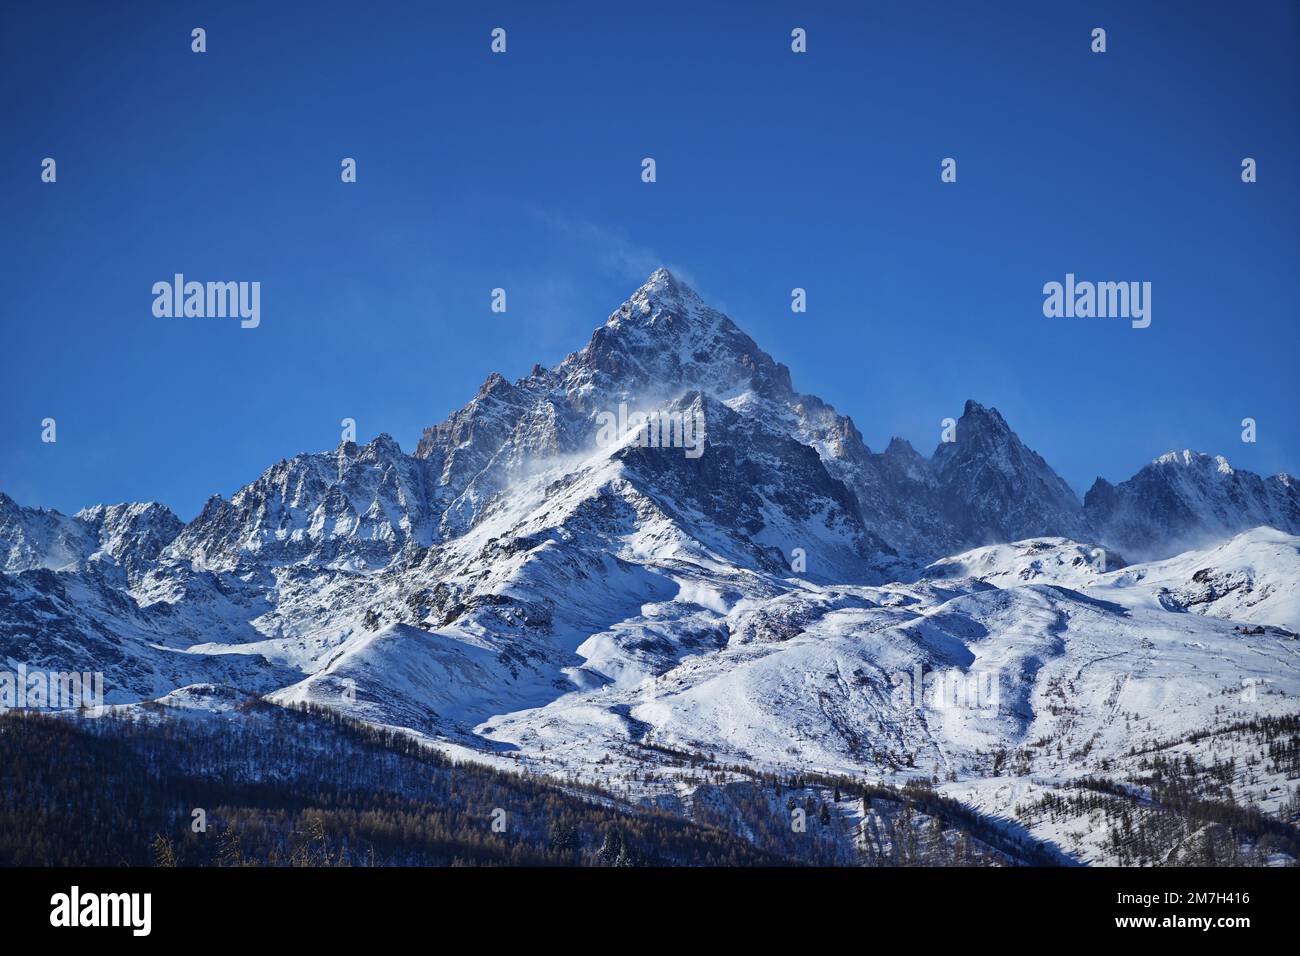 Monviso, a 3.842 metri, è il re delle Alpi, imponente e maestoso nella sua bellezza innevata. Una vista mozzafiato dal paese di Ostana in Piemonte, Foto Stock